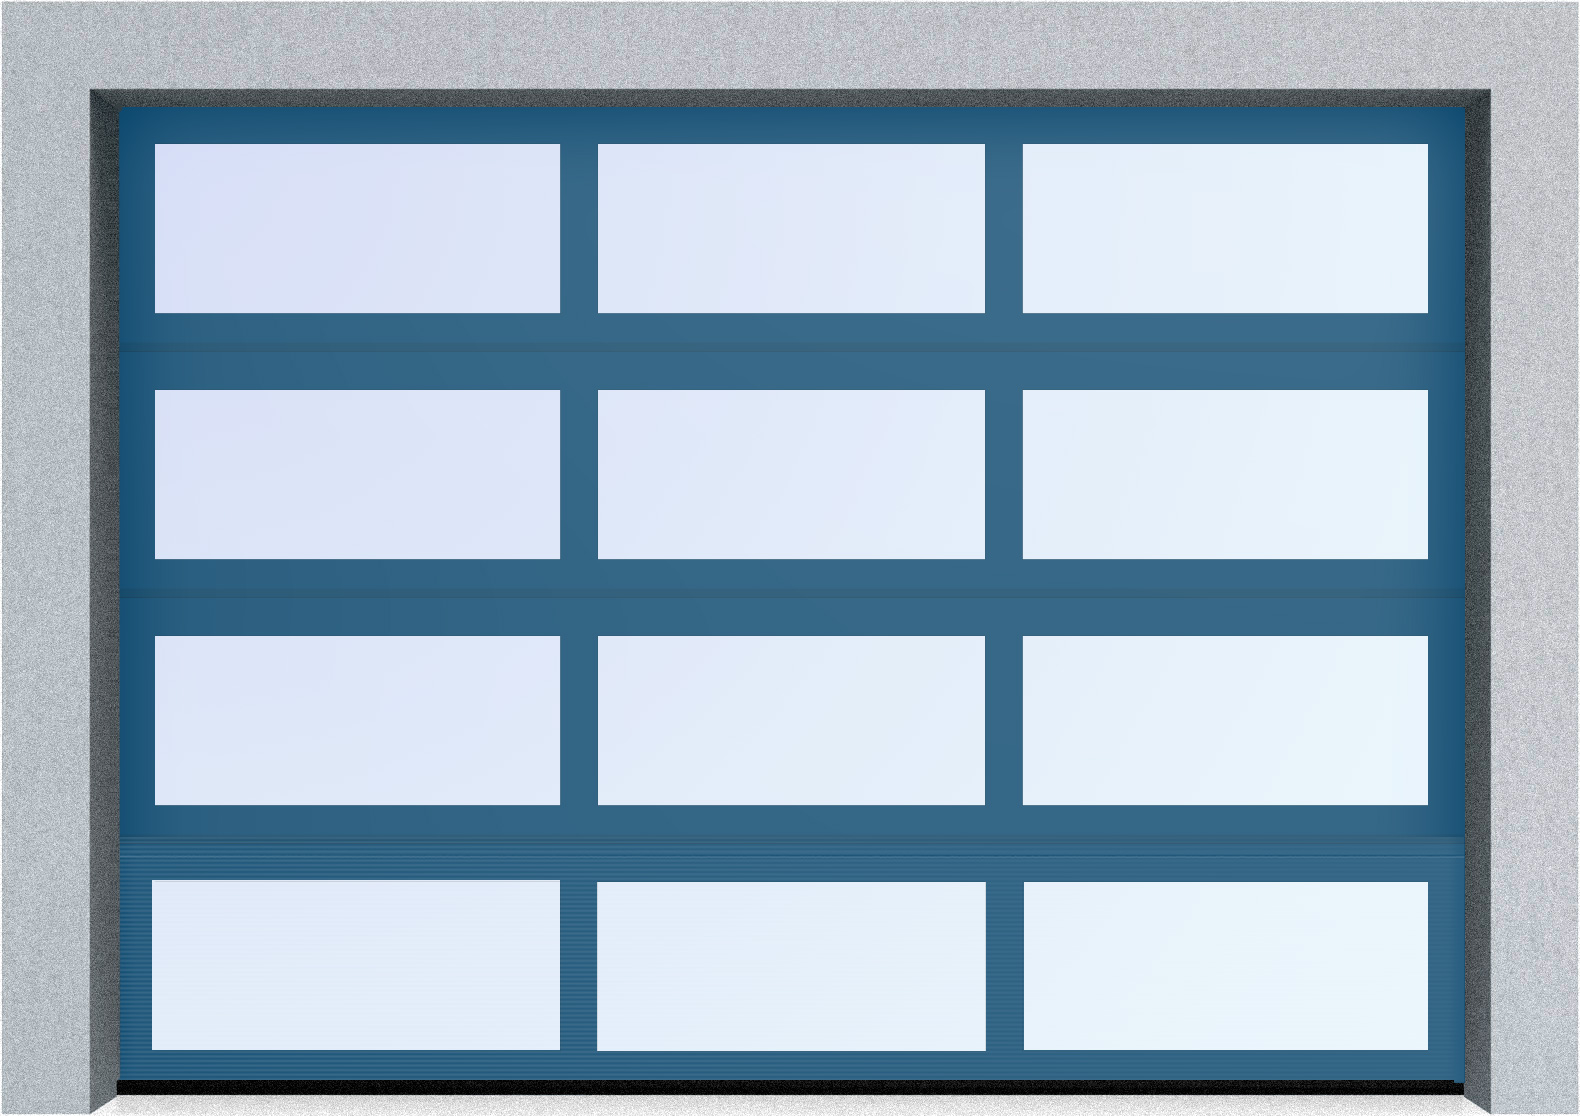  Секционные панорамные ворота серии AluTrend (АЛП) 2875х2125 нижняя панель стандартные цвета, фото 3 